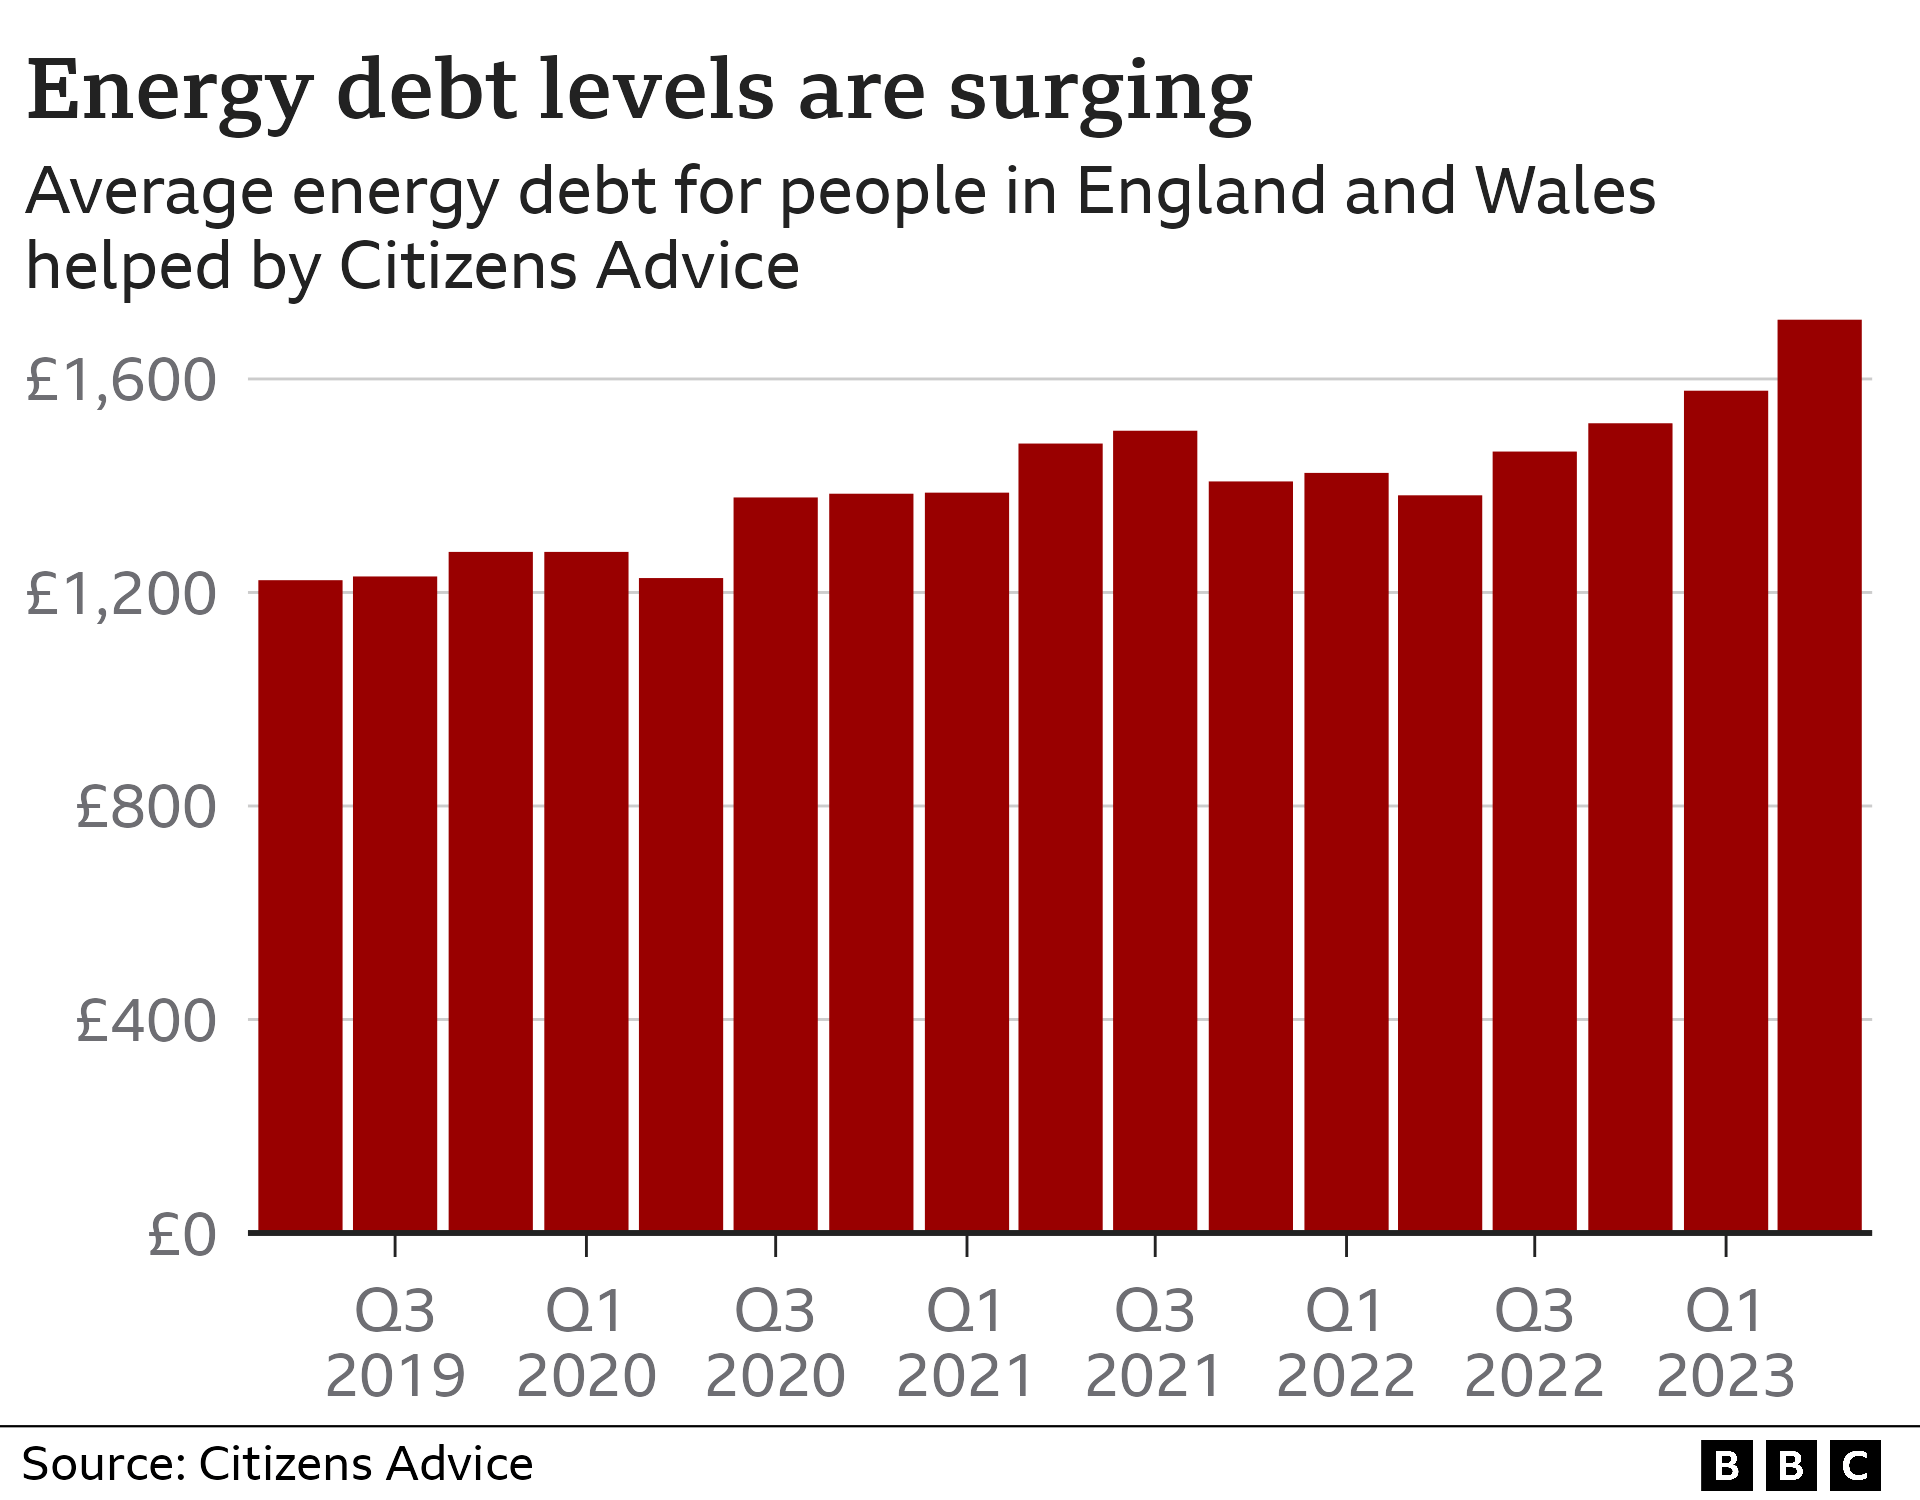 Гистограмма, показывающая средний уровень энергетического долга жителей Англии и Уэльса по данным Citizens Advice. В апреле-июне 2023 года он составлял 1711 фунтов стерлингов, что выше, чем когда-либо с 2019 года.